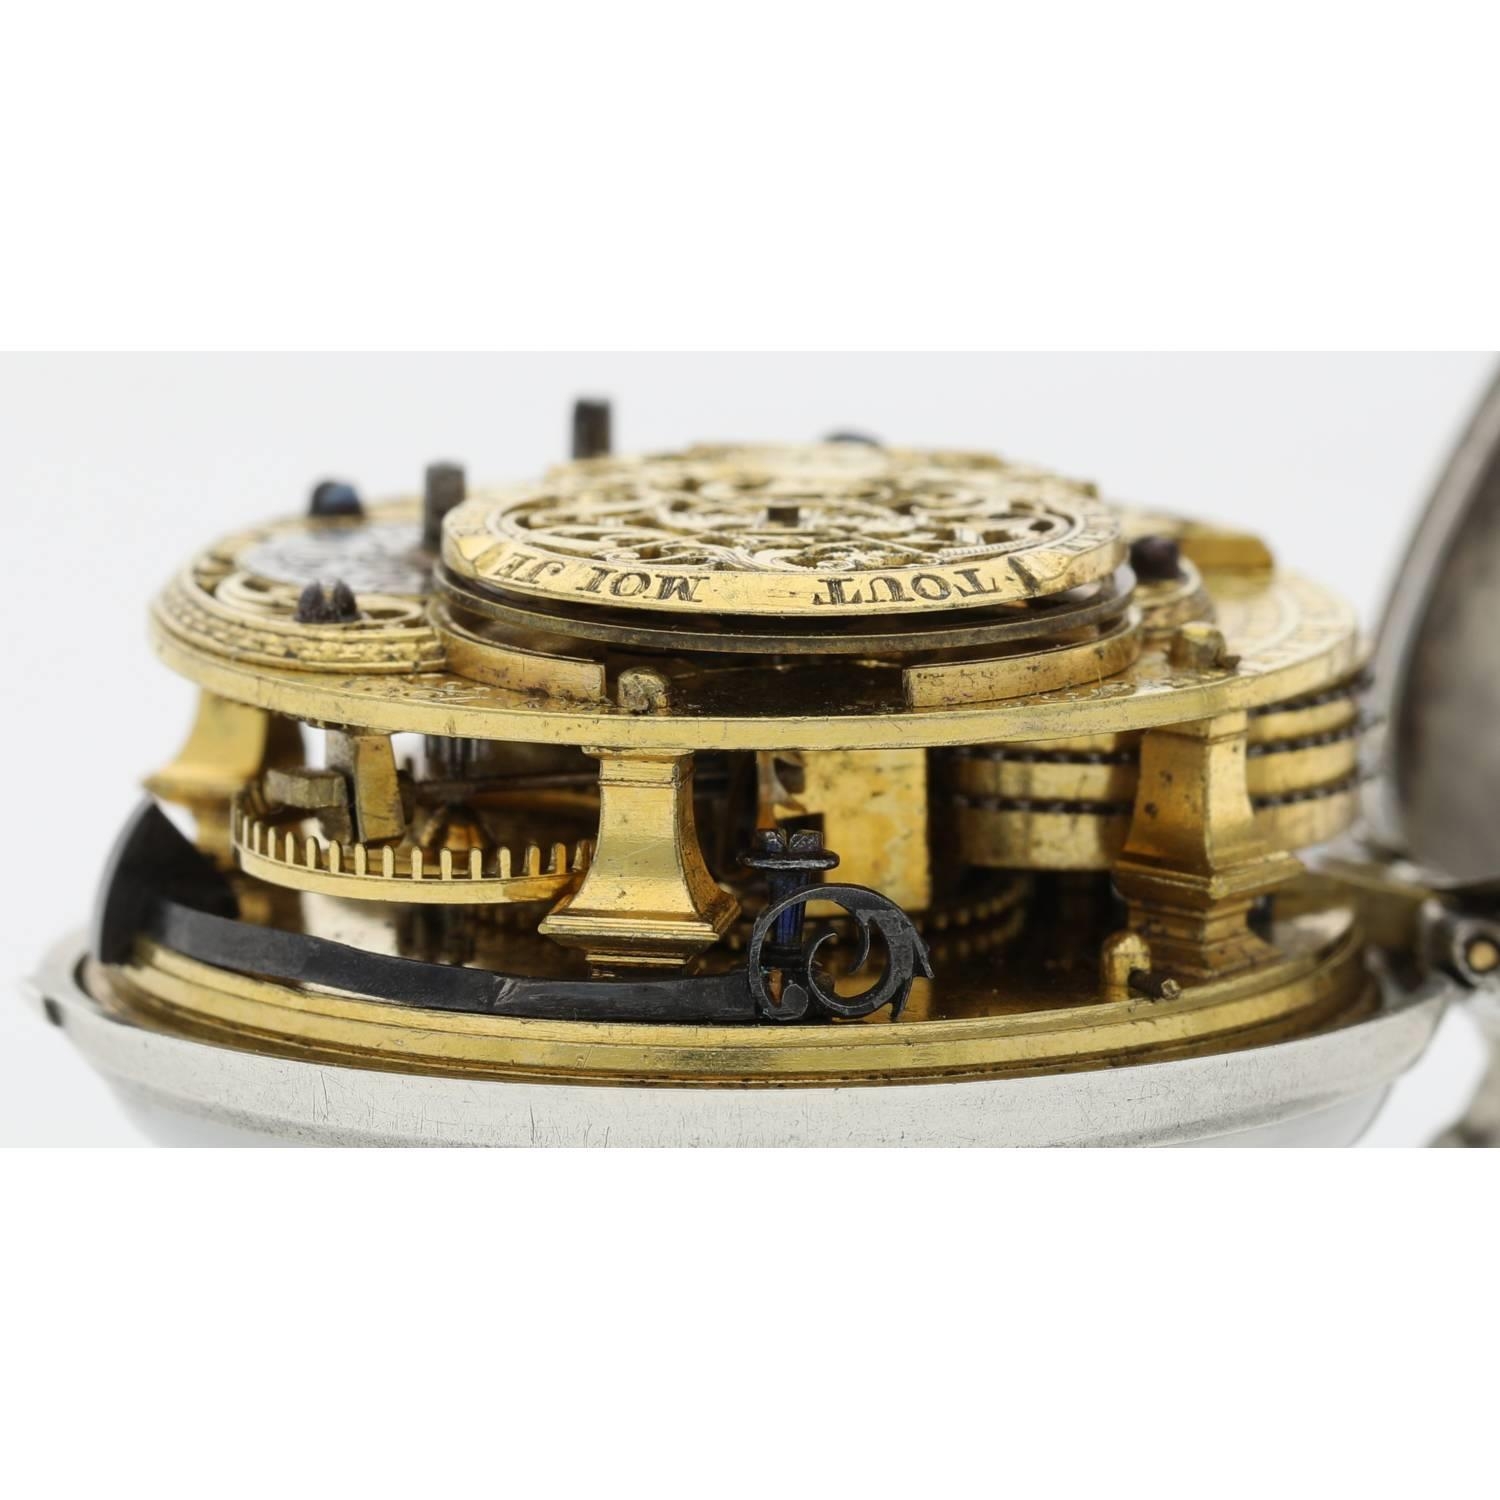 Paulus Bramer En Zoom, Amsterdam - Dutch 18th century silver pair cased verge calendar pocket watch, - Image 7 of 10